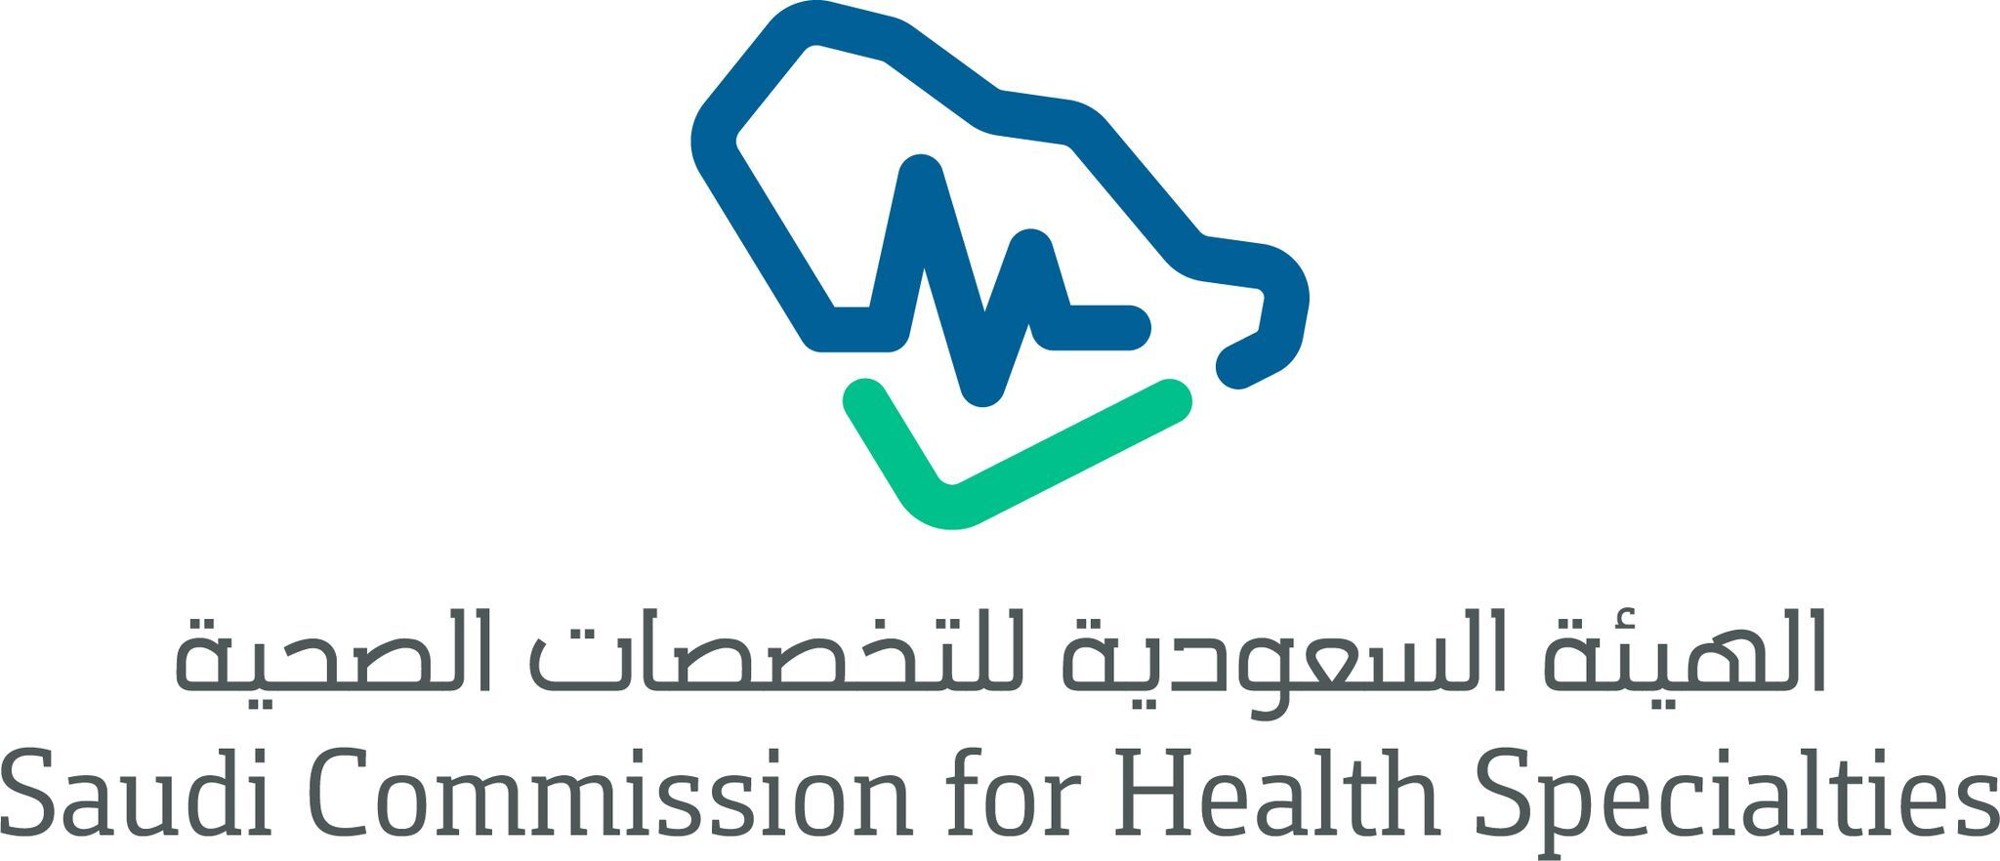 اجتياز جميع خريجي كلية طب الاسنان الدفعة الاولى لاختبارات الهيئة السعودية للتخصصات الصحية